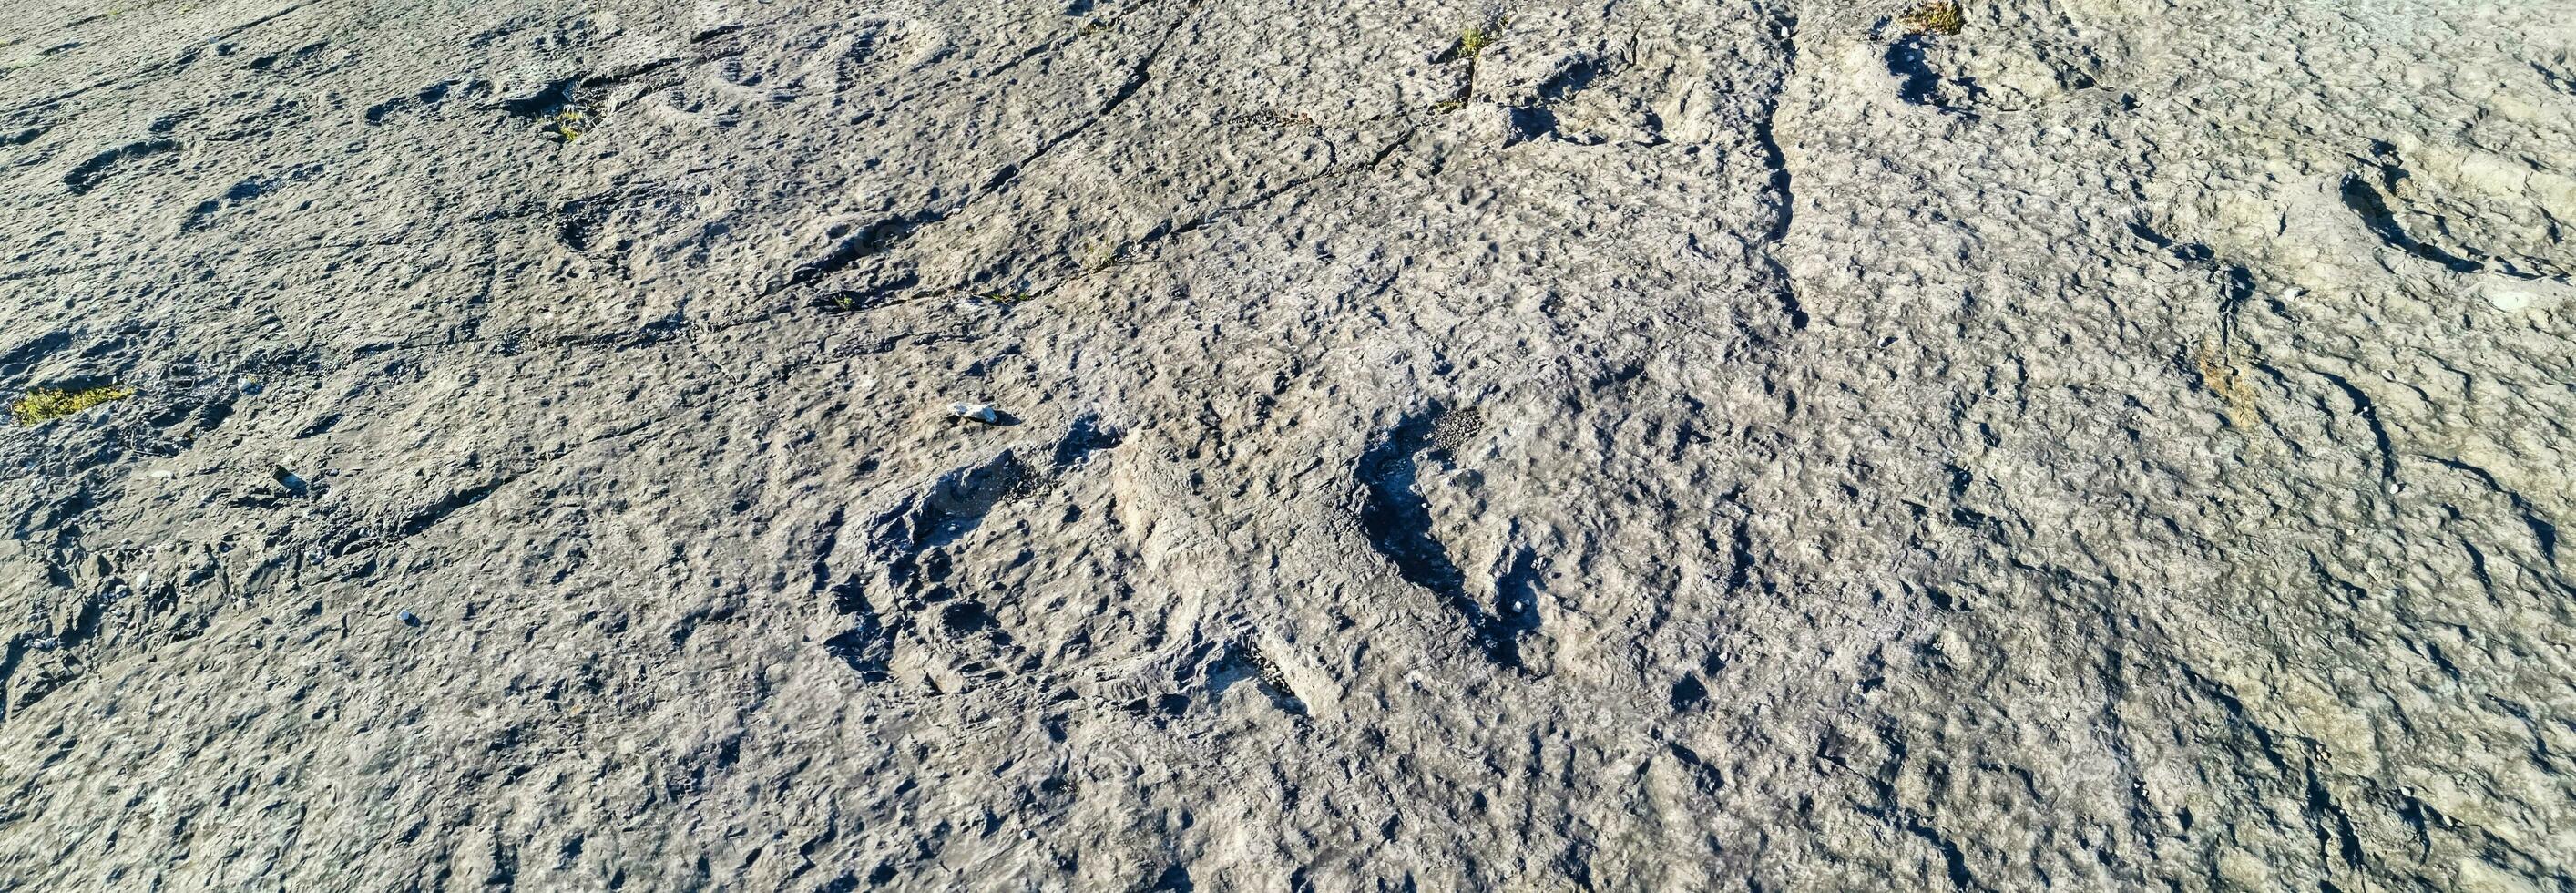 natuurlijk monument van fossiel dinosaurus voetafdrukken in serra d 'aire in pedreira Doen galinha, in Portugal. een pedagogisch stroomkring was gemaakt Bij de plaats, waar bezoekers kan zien en tintje de voetafdrukken foto